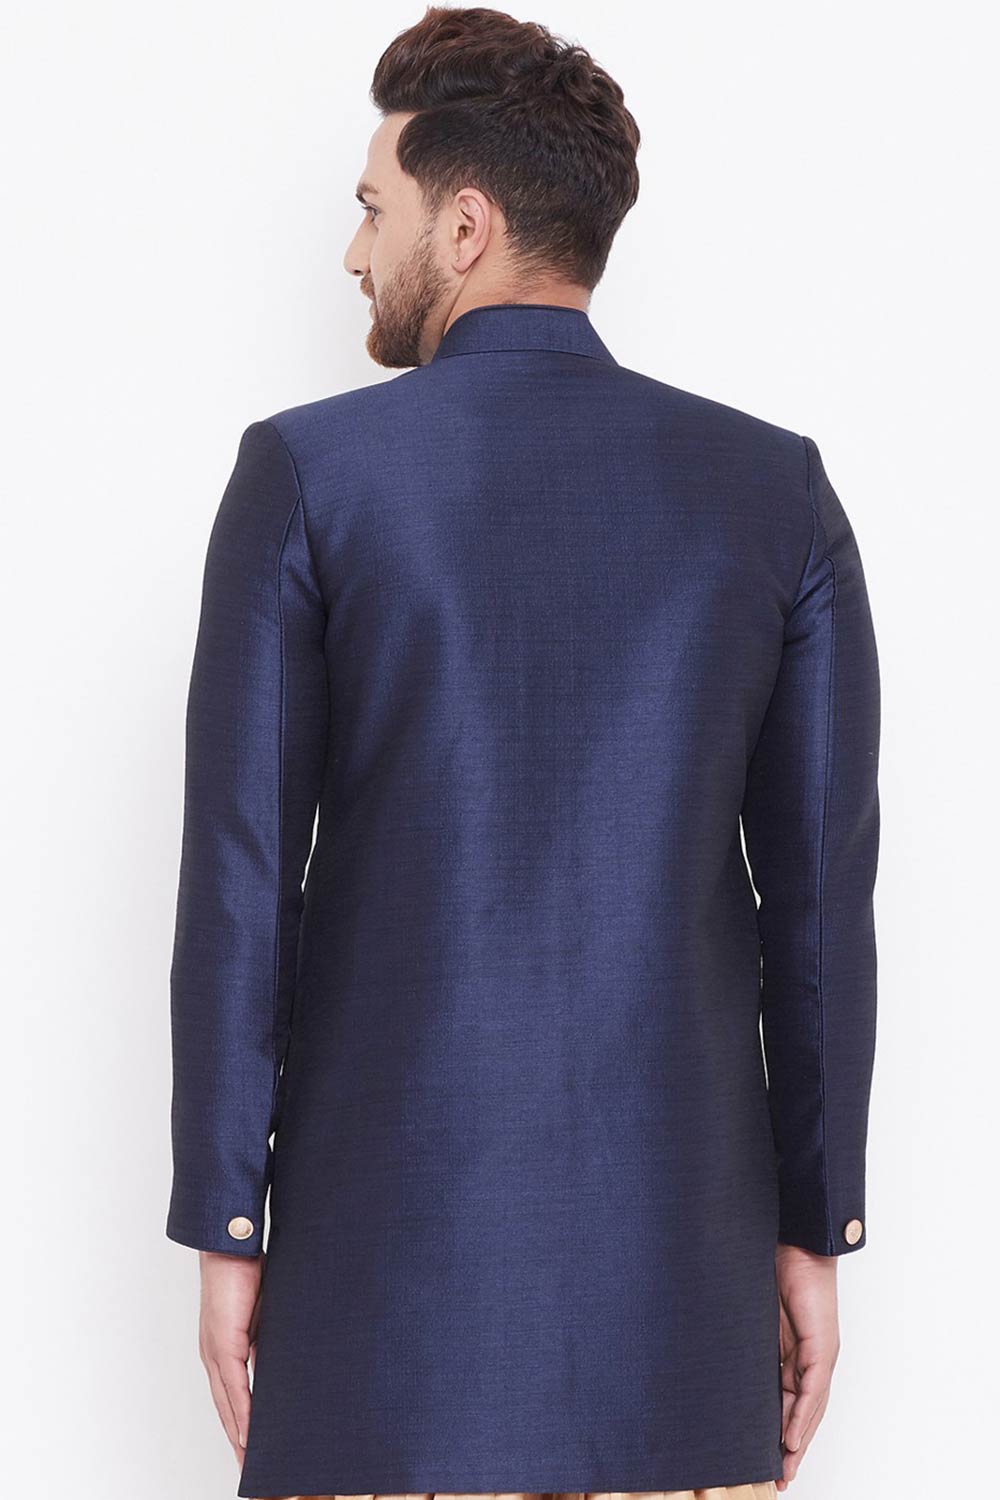 Buy Men's Blended Silk Solid Sherwani in Navy Blue - Back